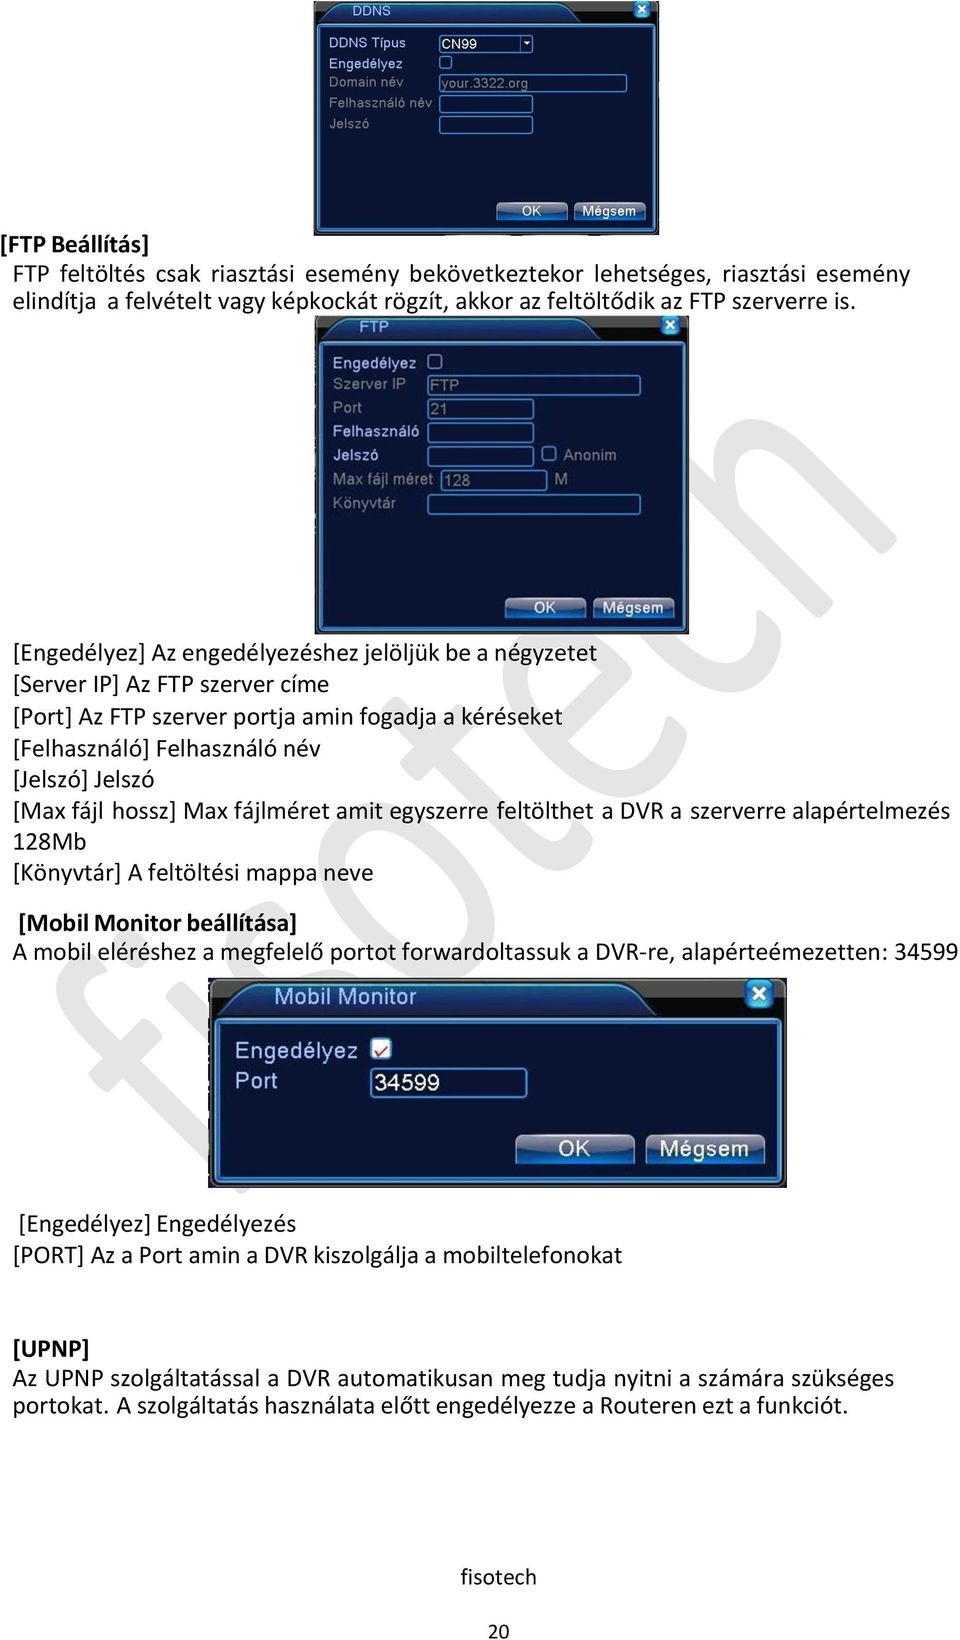 hossz] Max fájlméret amit egyszerre feltölthet a DVR a szerverre alapértelmezés 128Mb [Könyvtár] A feltöltési mappa neve [Mobil Monitor beállítása] A mobil eléréshez a megfelelő portot